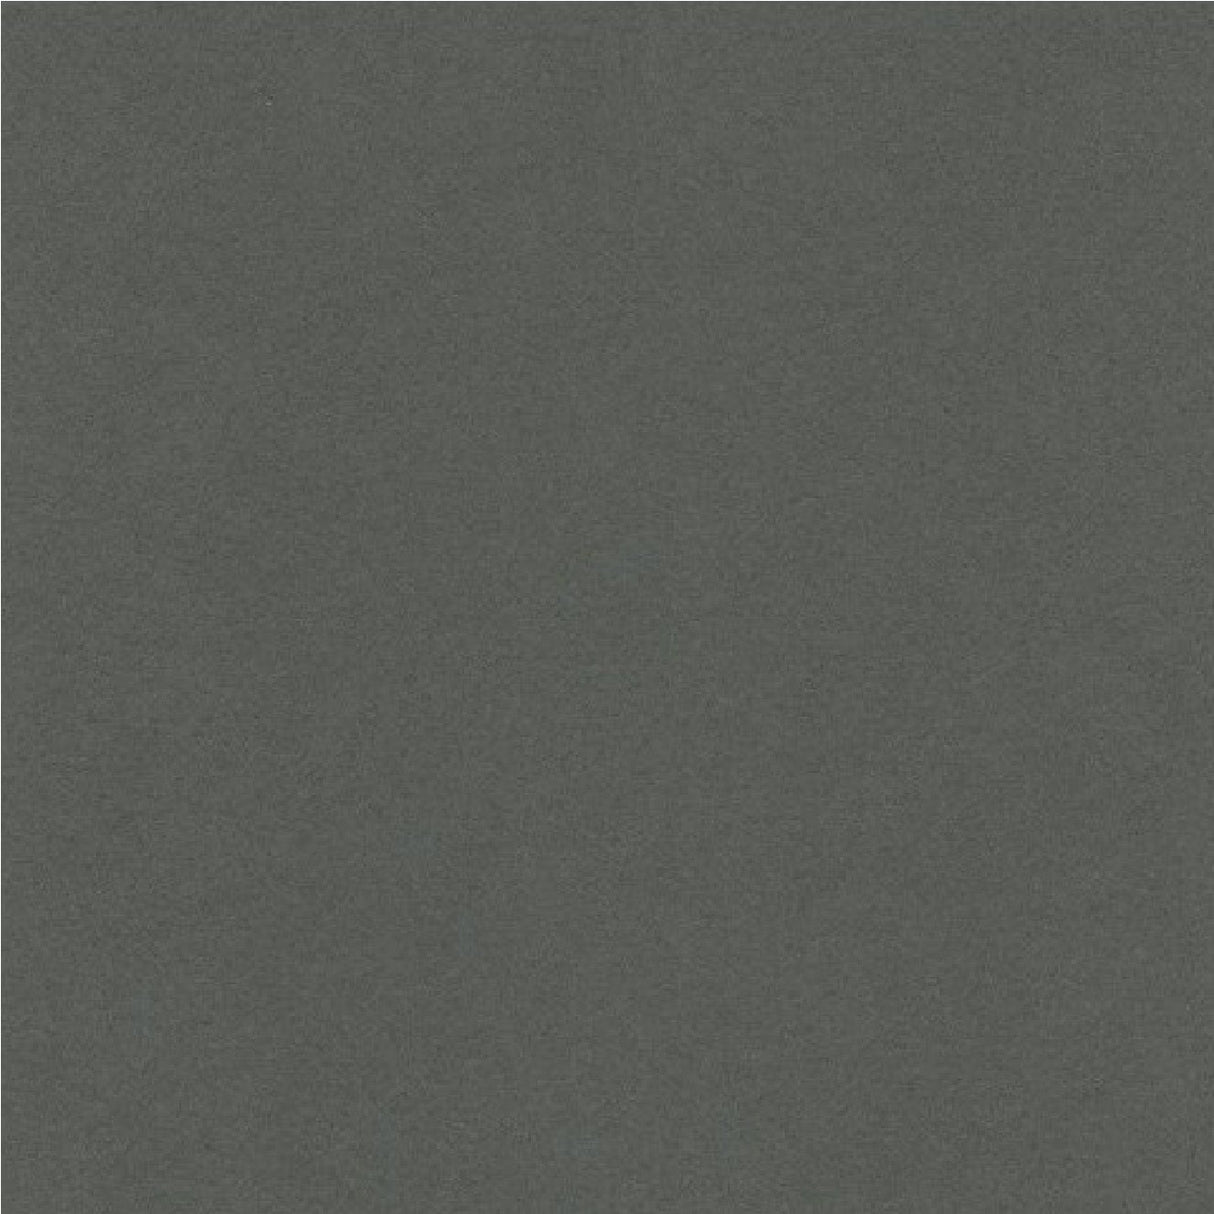 Rockfon Color-all Concrete Ceiling Tiles - 600x600mm - Square Edge